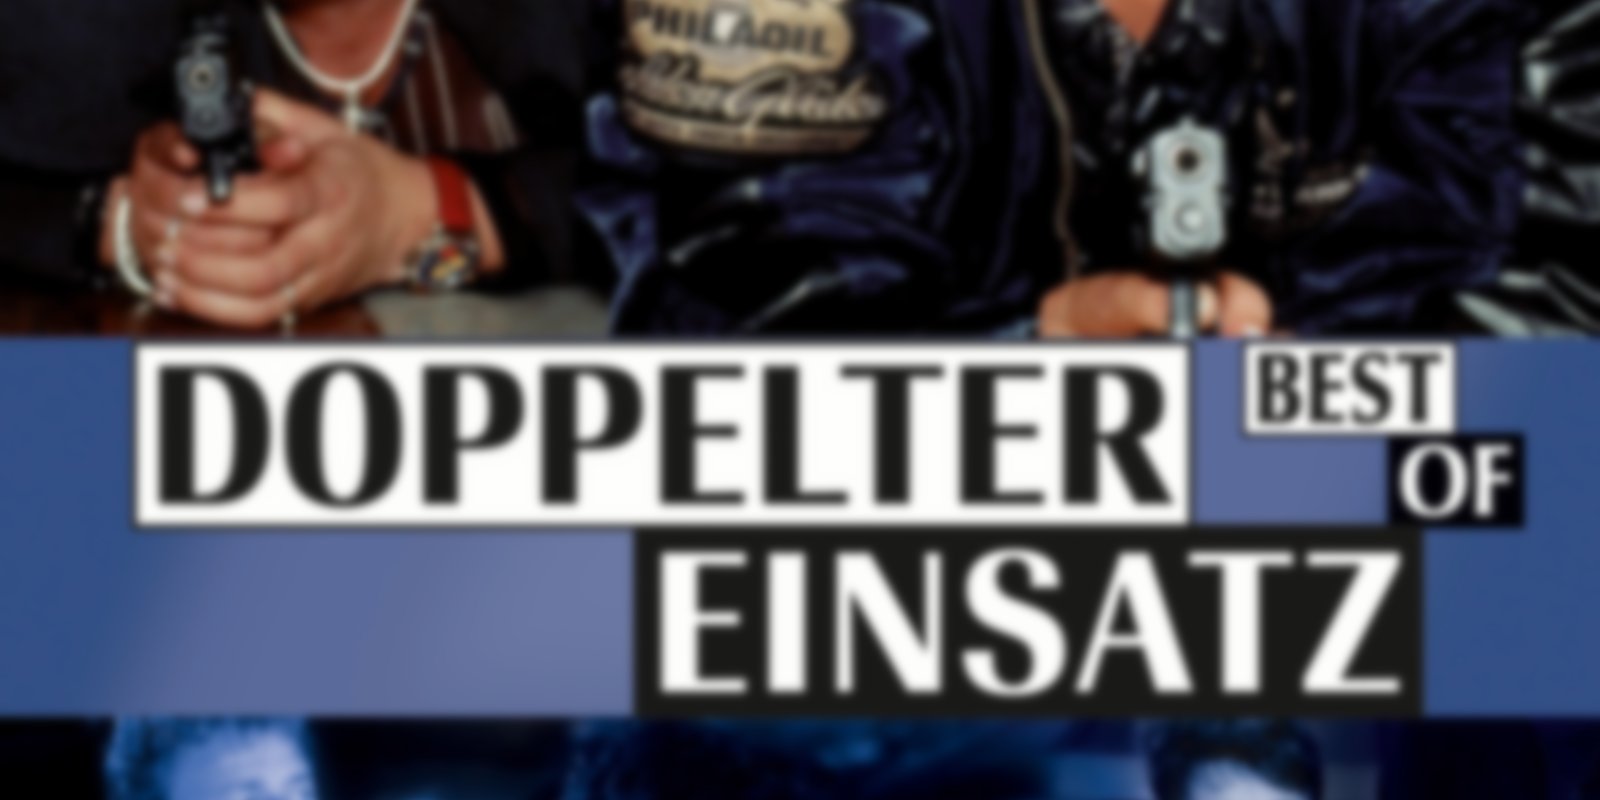 Doppelter Einsatz - Best of Volume 1